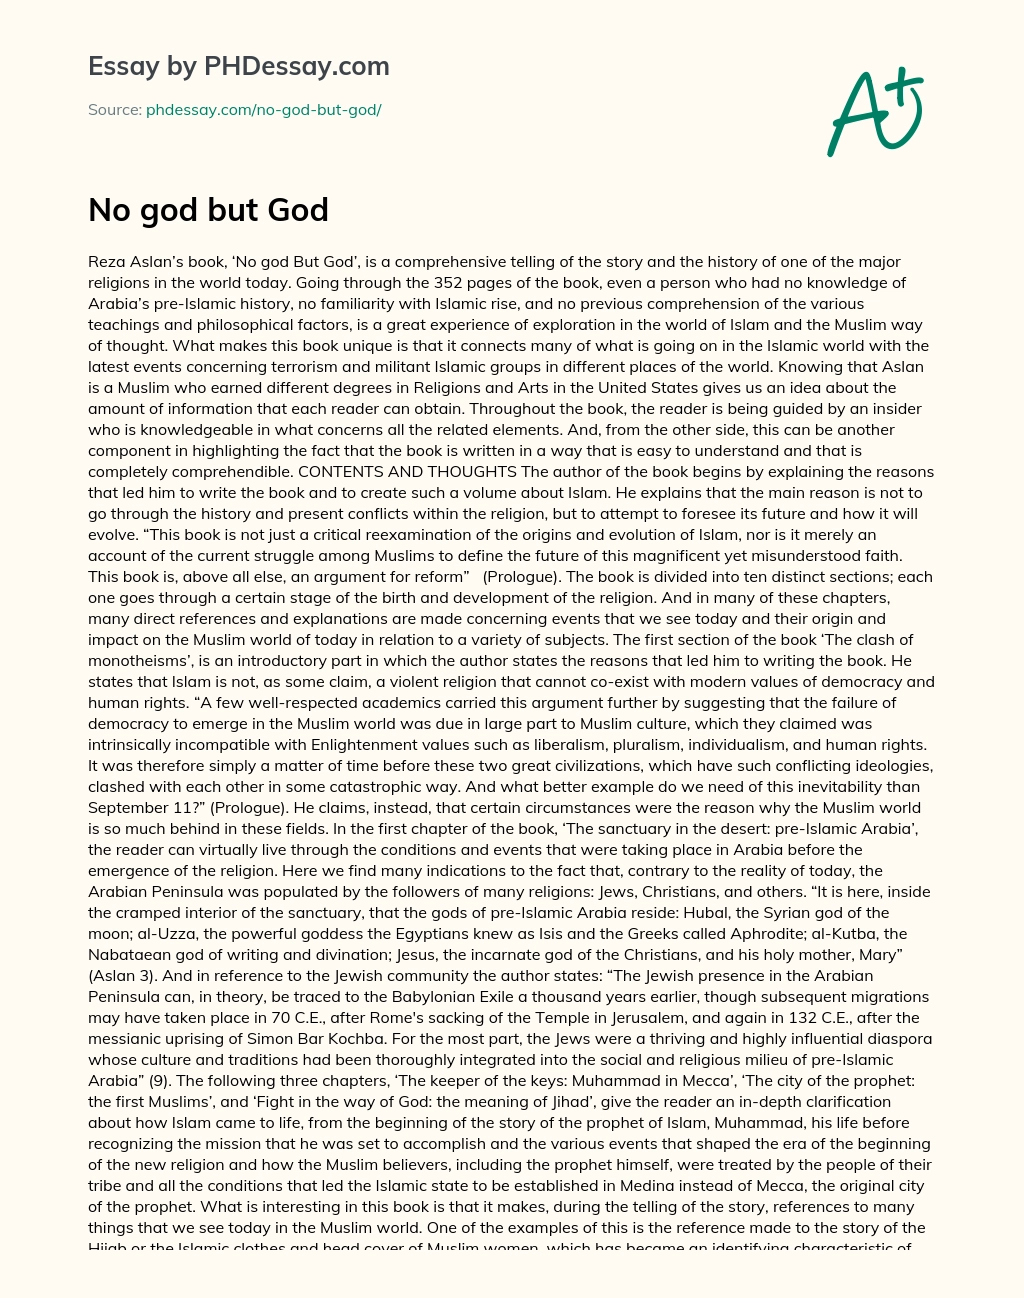 No God but God essay